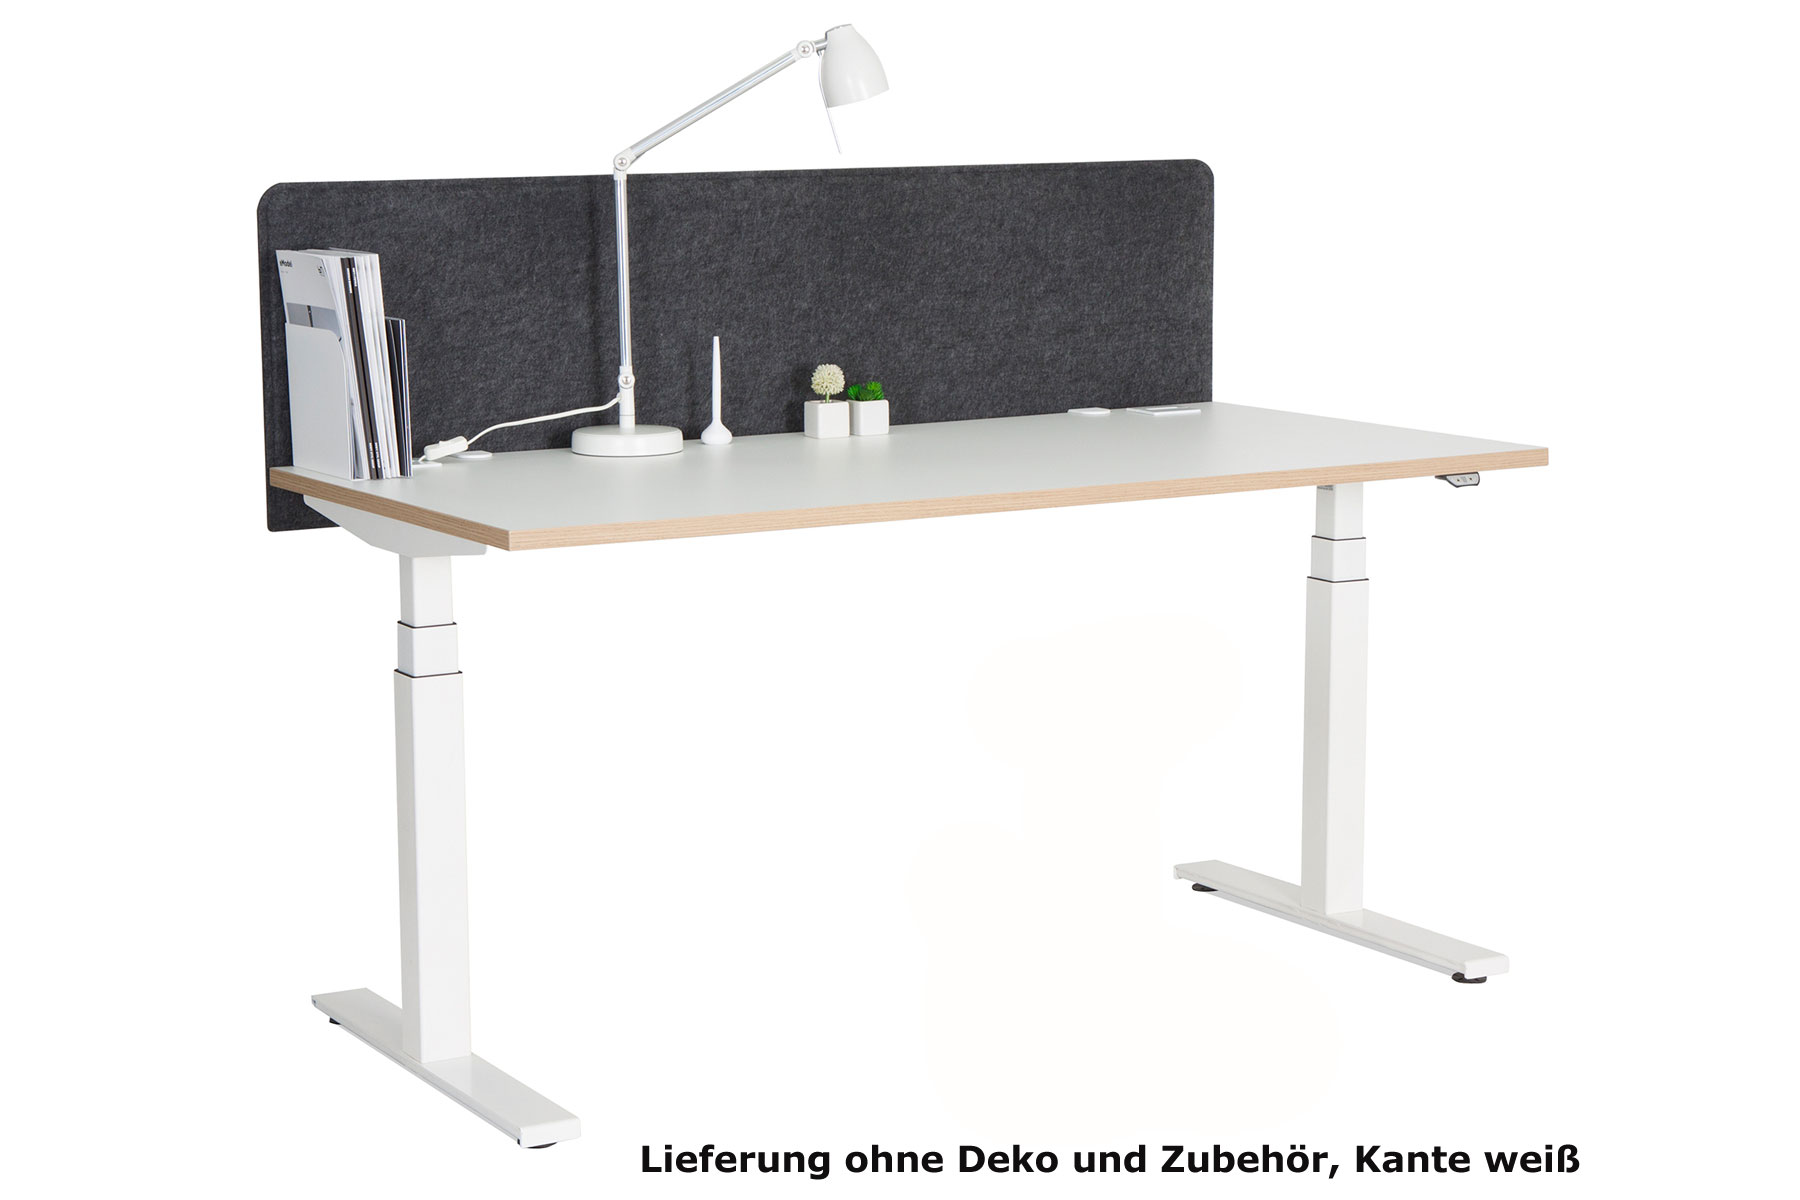 Steh-Sitzarbeitsplatz "eModel" 2.0 weiß/silber, 160x80 cm, sofort lieferbar!